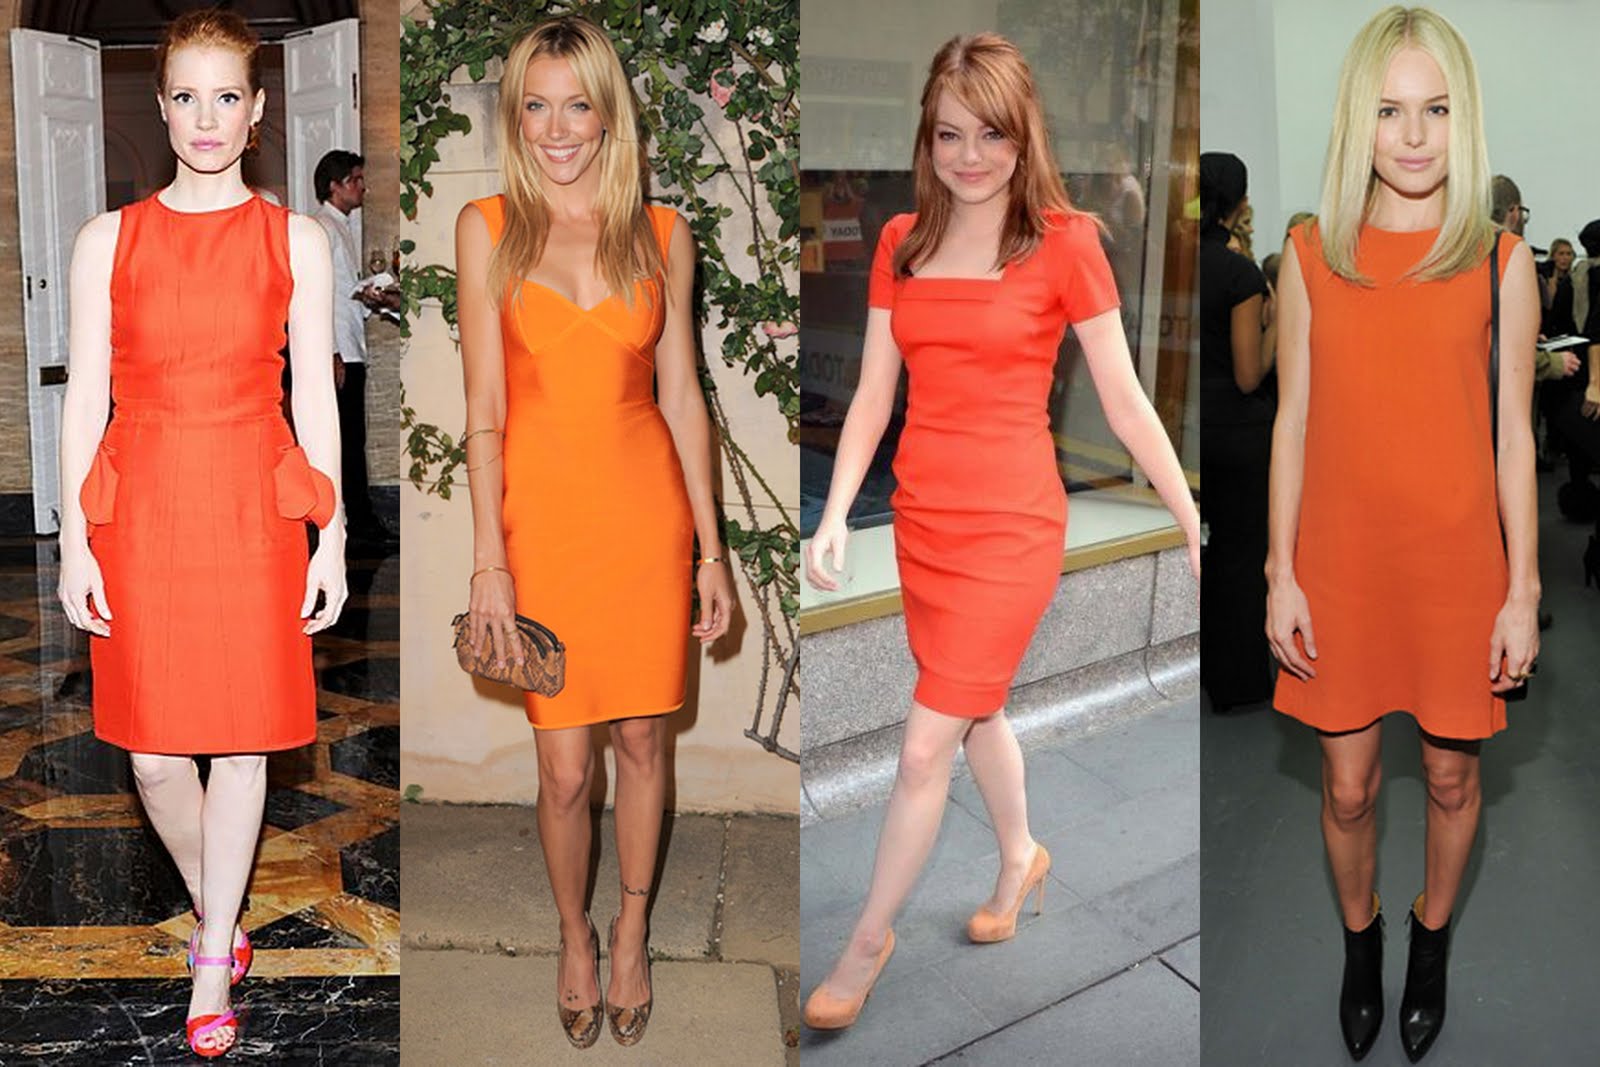 http://4.bp.blogspot.com/-BzMgCEA5oAI/TkLy1TWT-BI/AAAAAAAABJc/ZYfAQkWv5Pk/s1600/orange+dresses+3.jpg